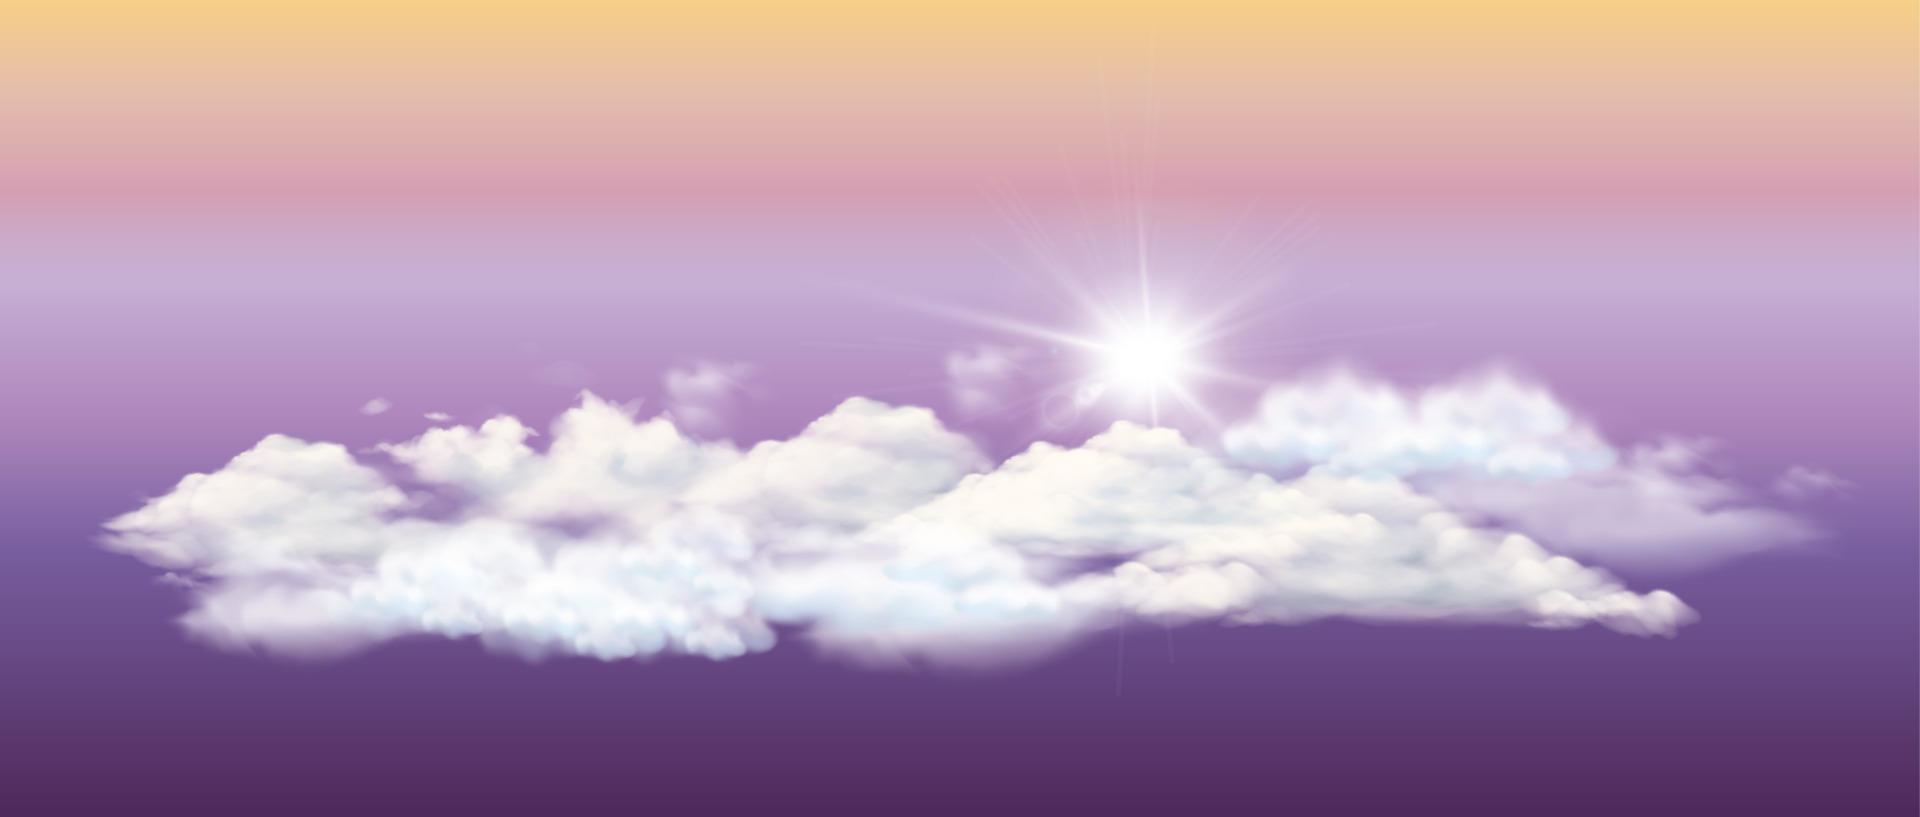 Weiße Wolken und Sonne, 3D-Darstellung der Naturlandschaft mit attraktiven Himmelsfarben, editierbarer Vektor